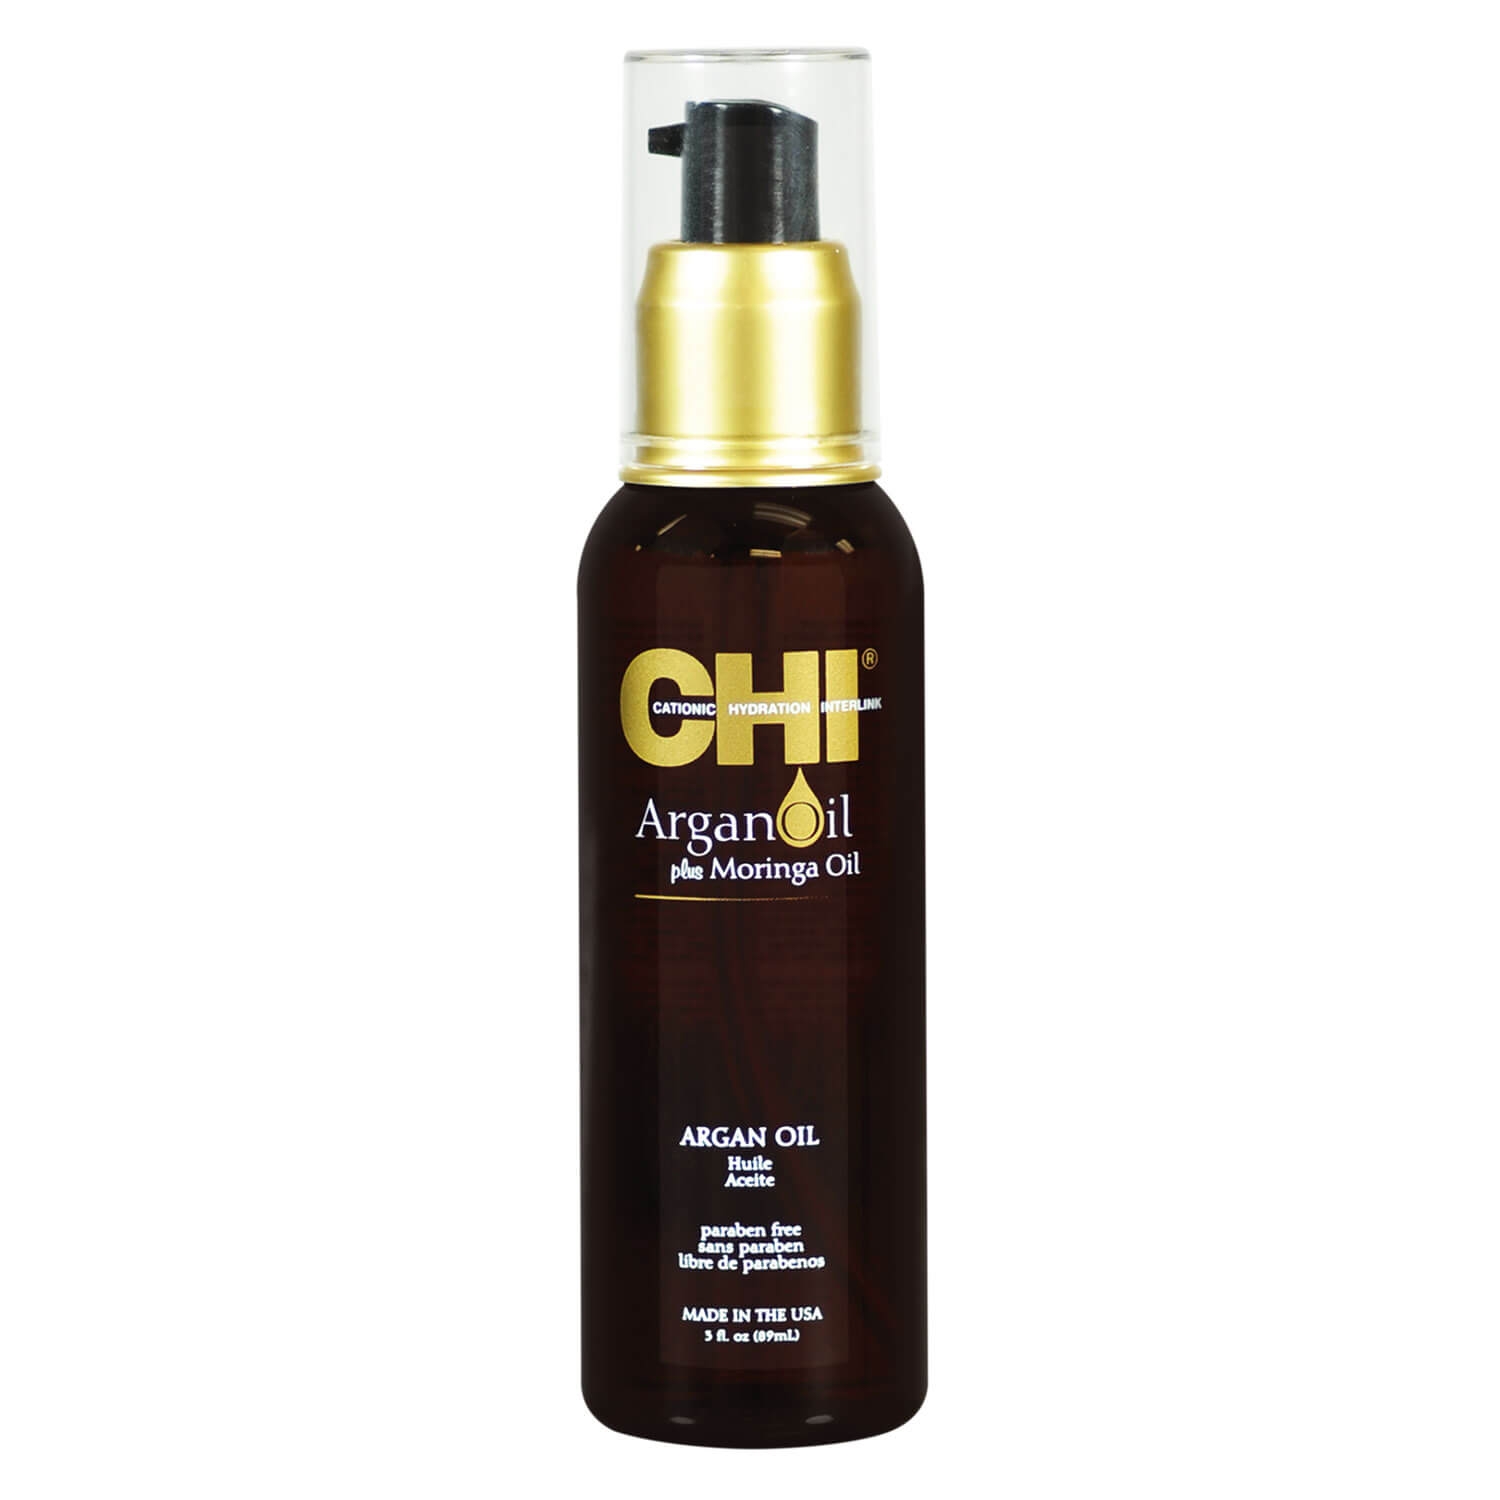 Product image from CHI Argan Oil - Argan plus Moringa Oil